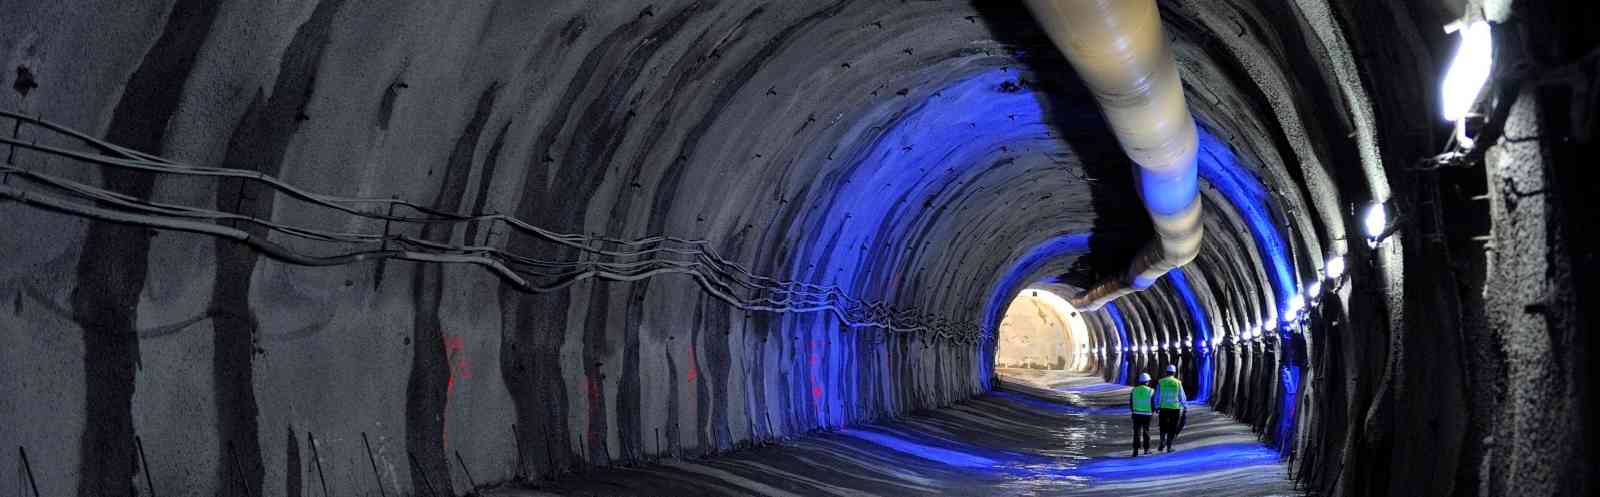 tunel3-1600x500.jpg